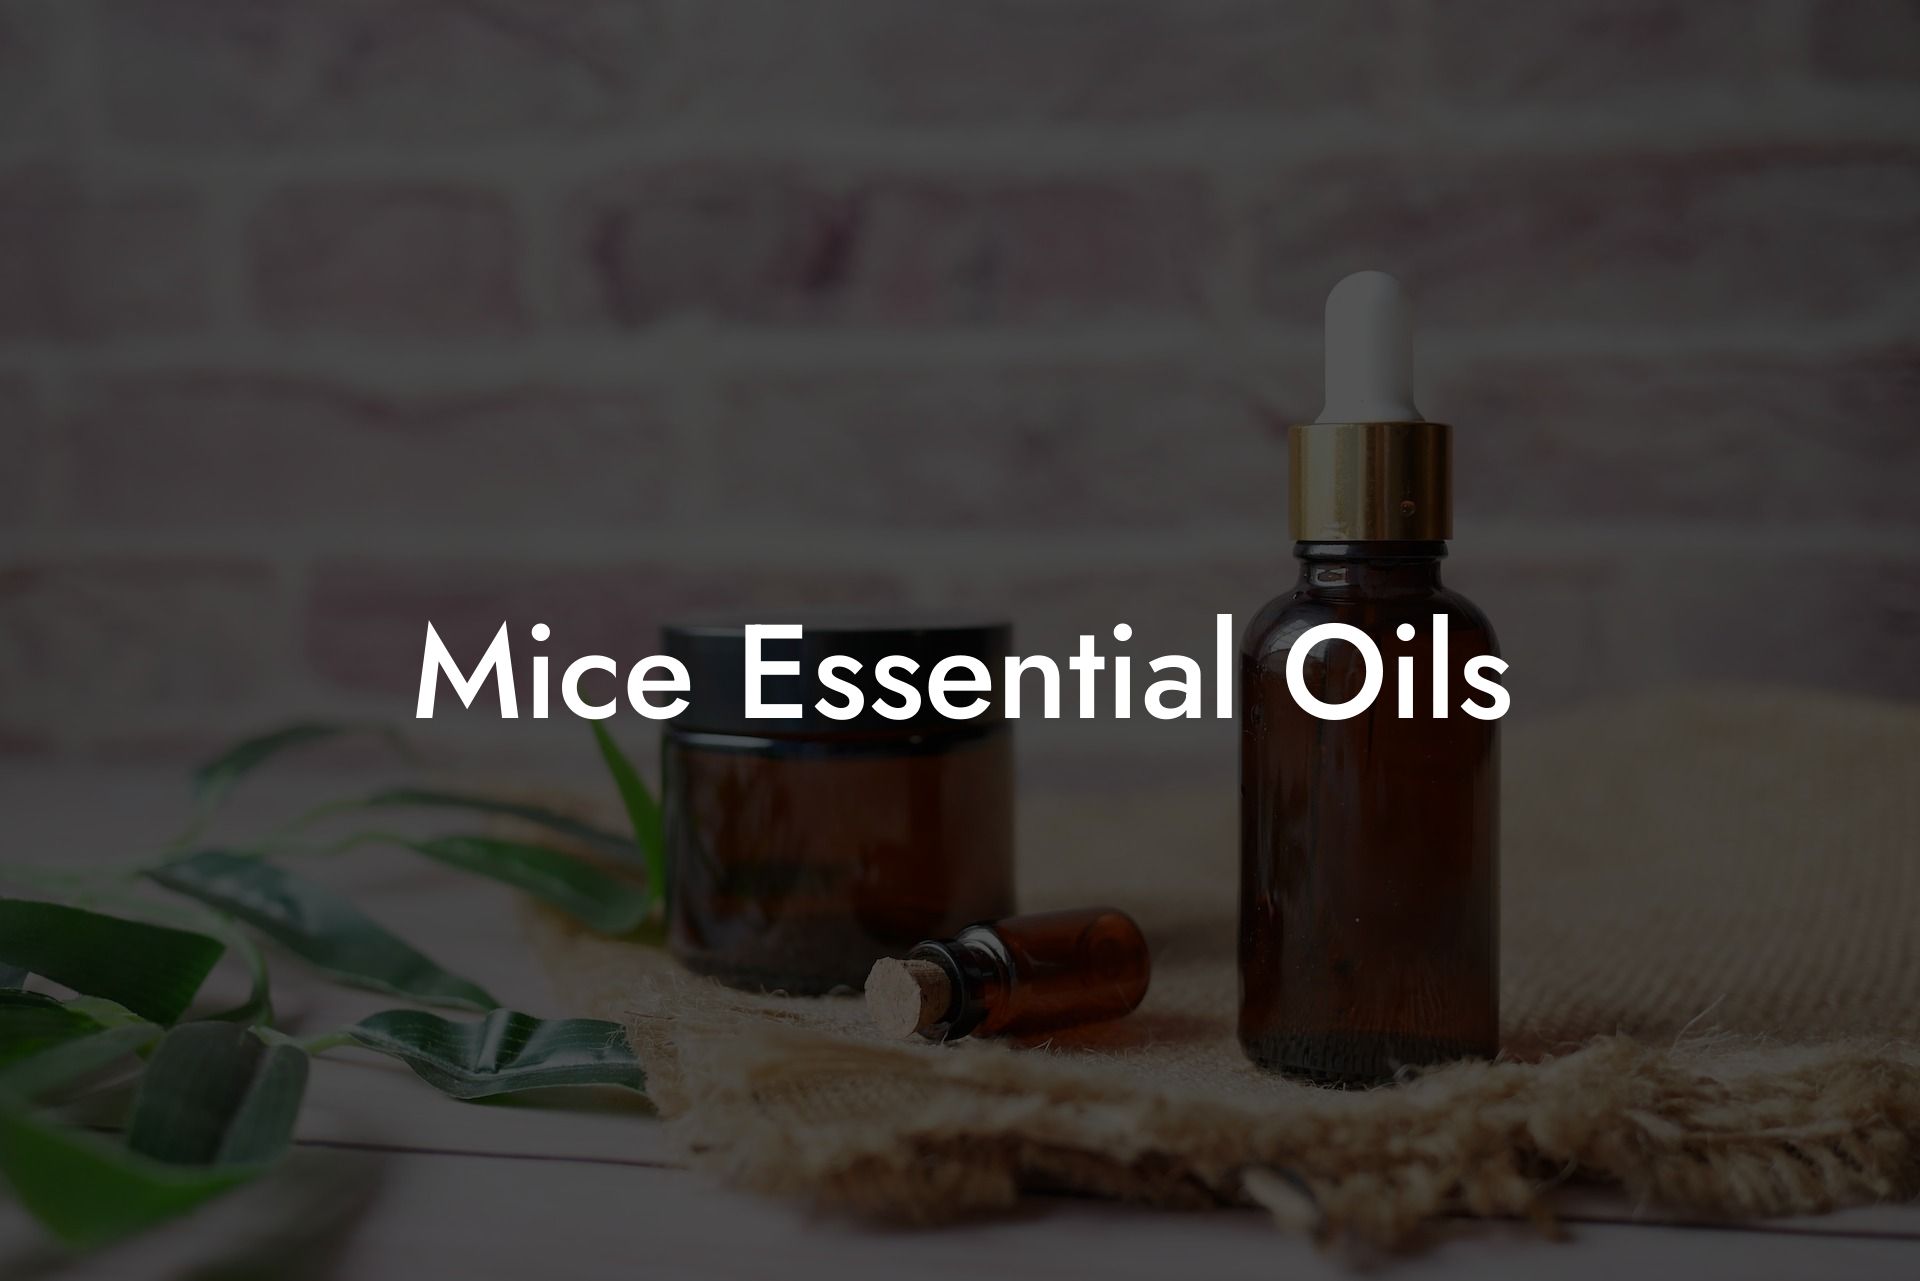 Mice Essential Oils